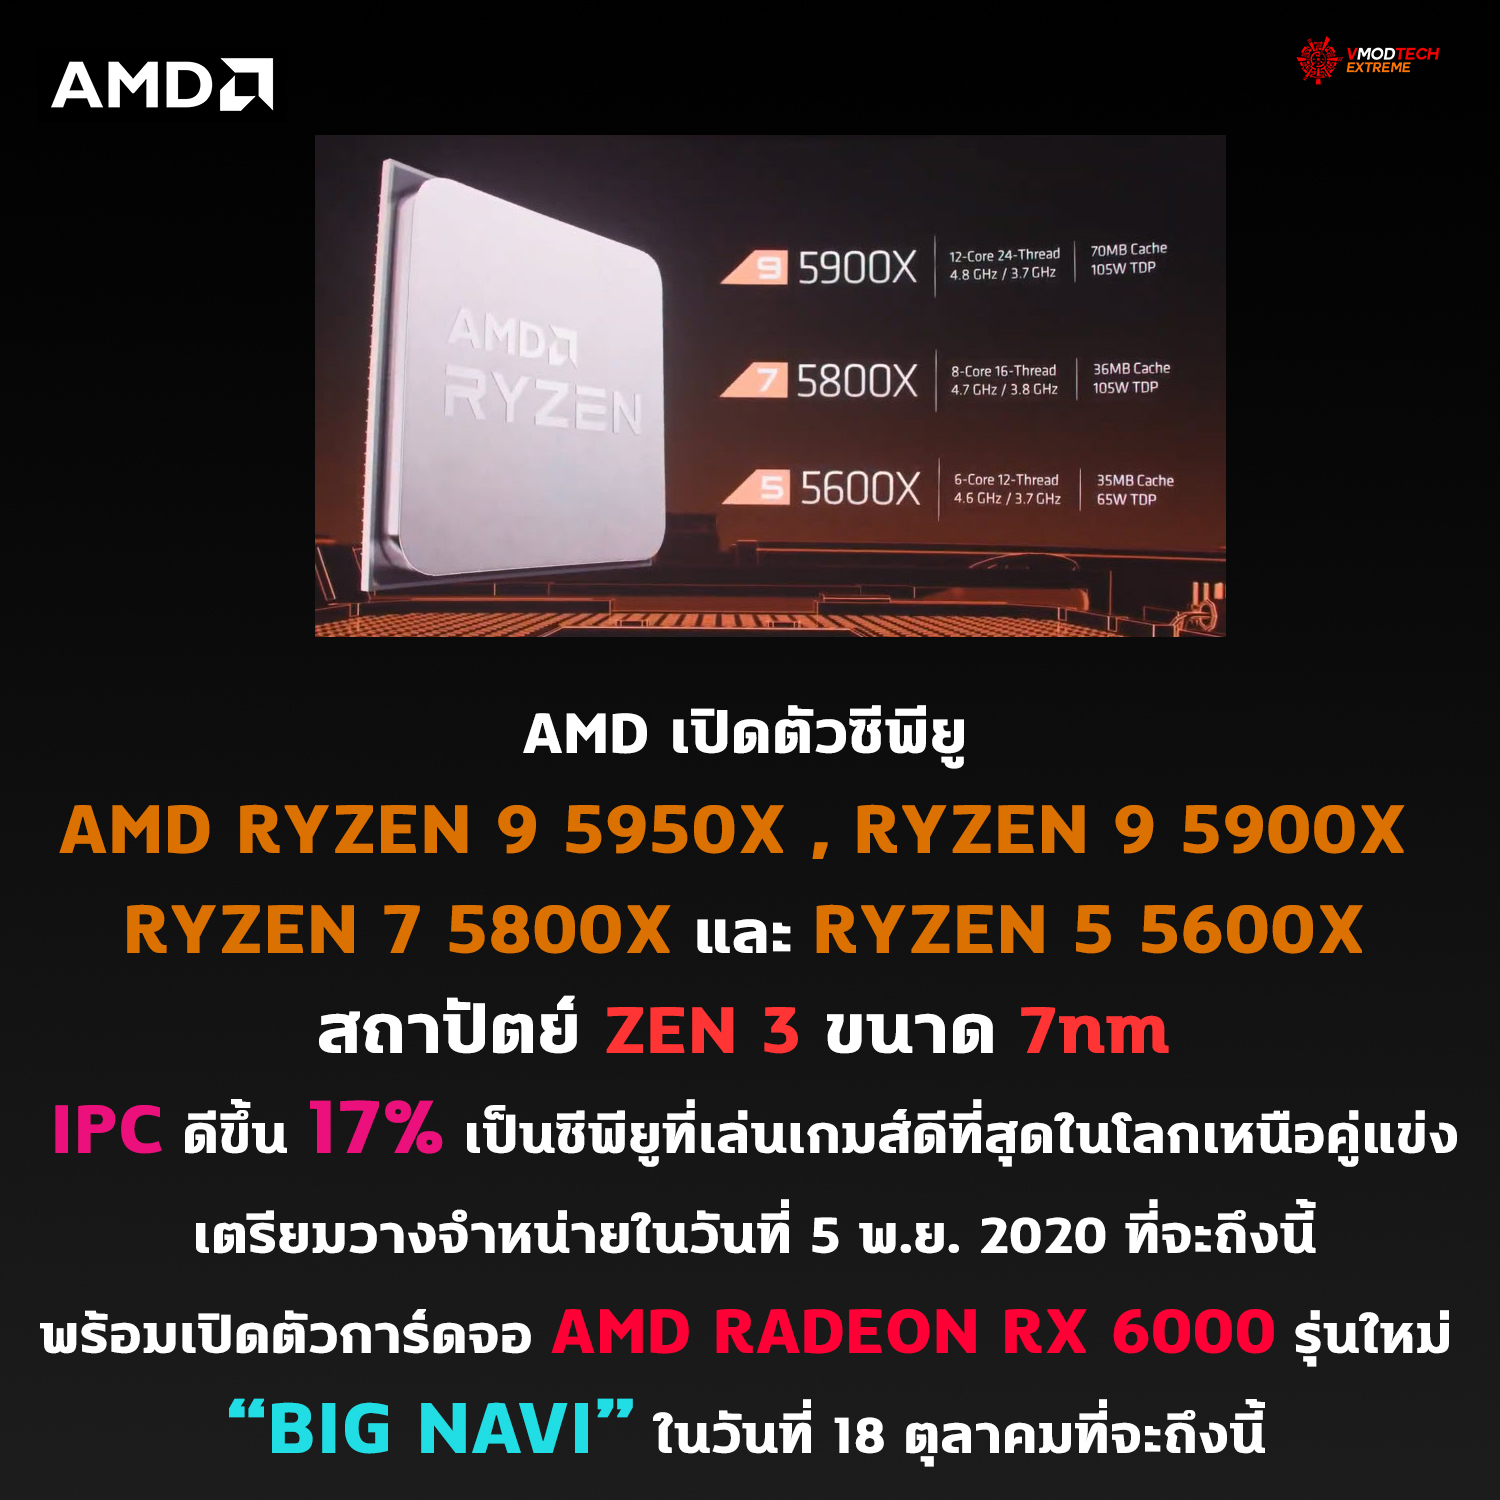 amd ryzen 9 5900x ryzen 9 3950x AMD เปิดตัวซีพียู AMD RYZEN 9 5950X , RYZEN 9 5900X , RYZEN 7 5800X และ RYZEN 5 5600X ในสถาปัตย์ ZEN 3 อย่างเป็นทางการพร้อมเปิดวางจำหน่ายในวันที่ 5 พ.ย. 2020 ที่จะถึงนี้ 